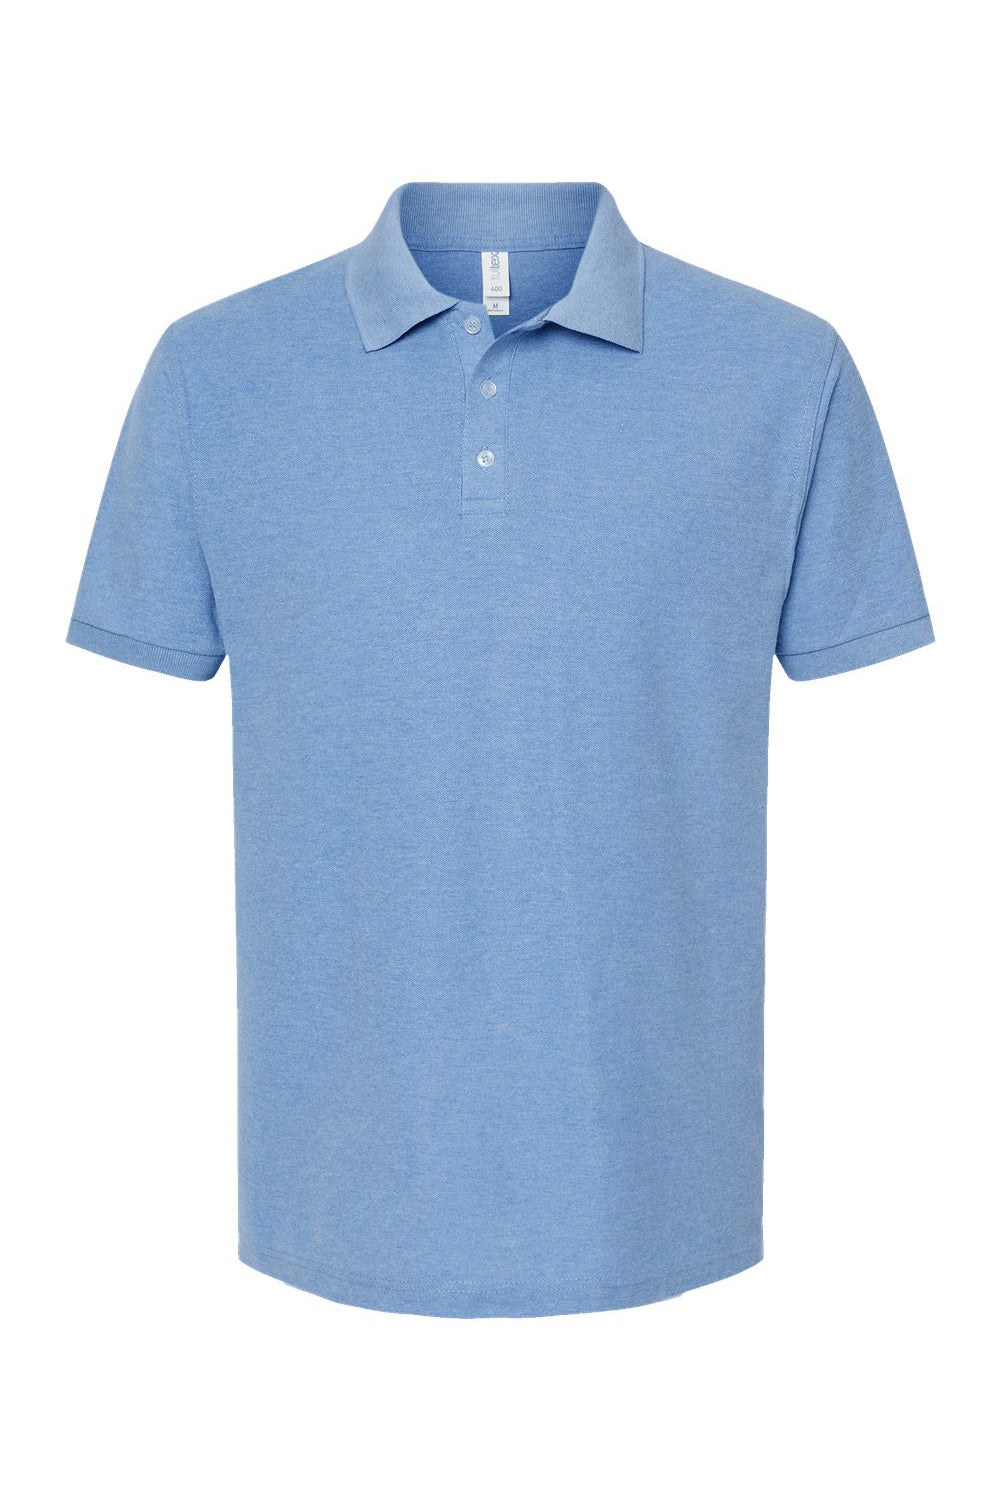 Tultex 400 Mens Sport Shirt Sleeve Polo Shirt Heather Light Blue Flat Front